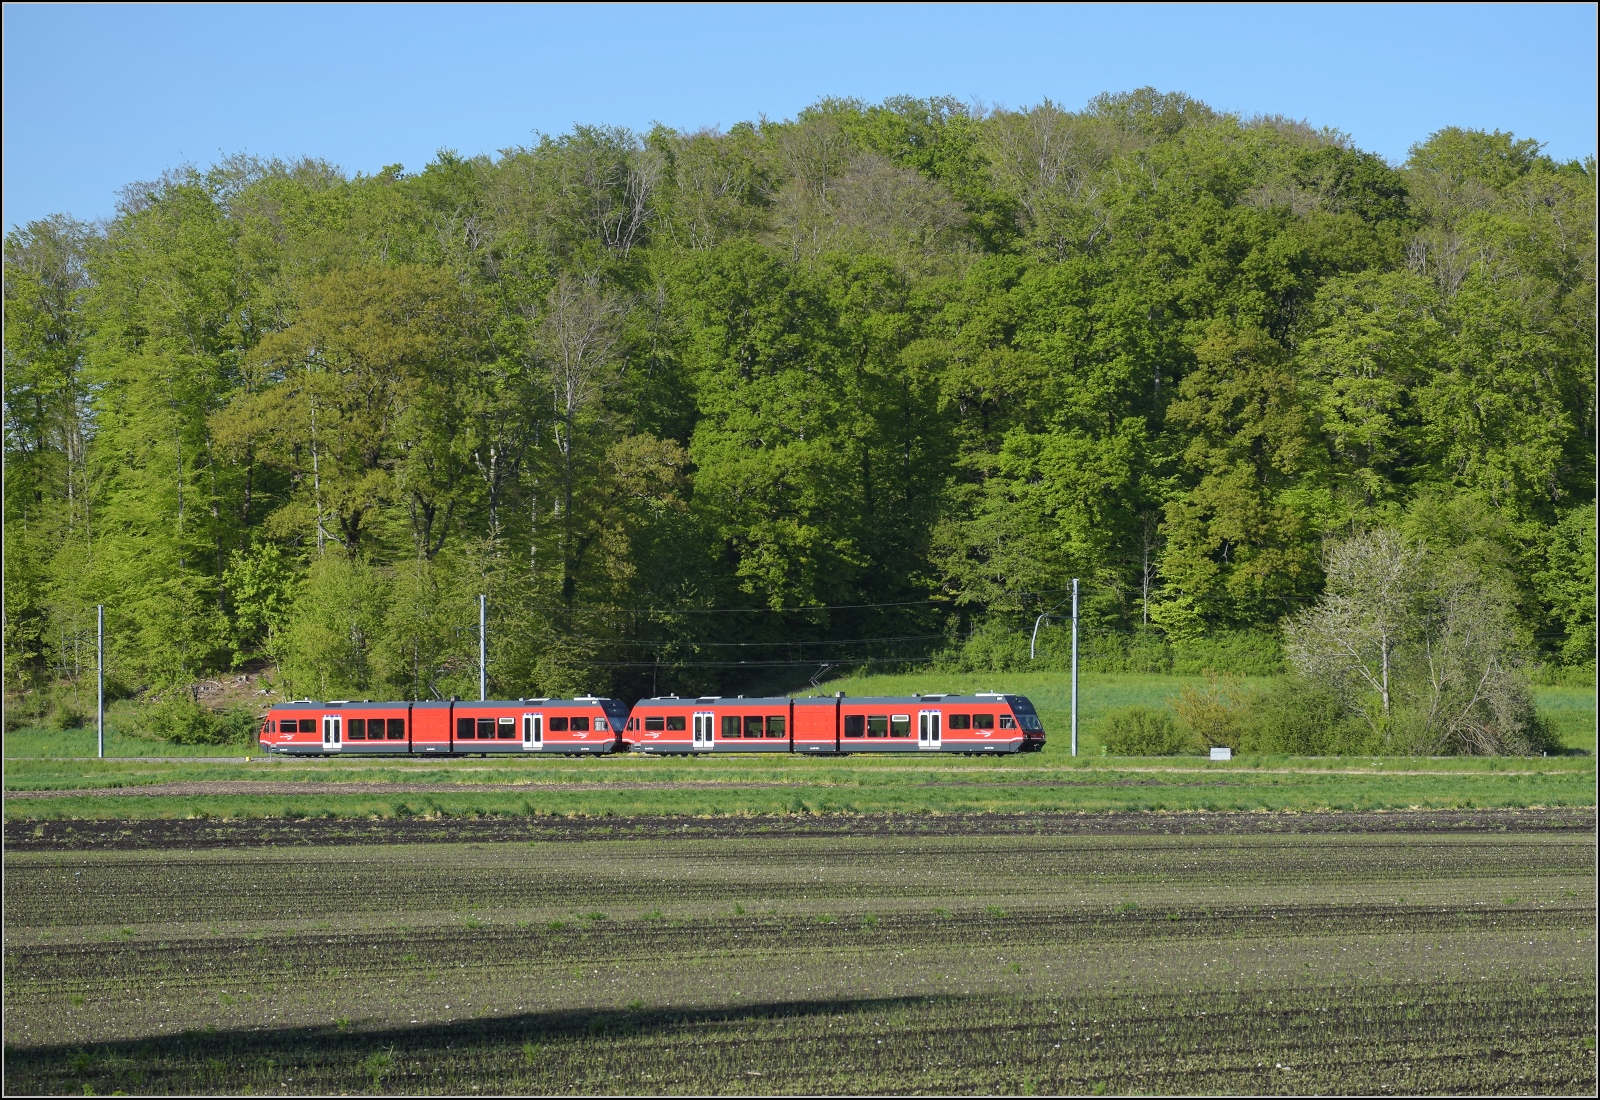 Auf der Biel-Täuffelen-Ins Bahn.

GTW Be 2/6 505 und GTW Be 2/6 503 der ASm bei Büttelen. April 2022.